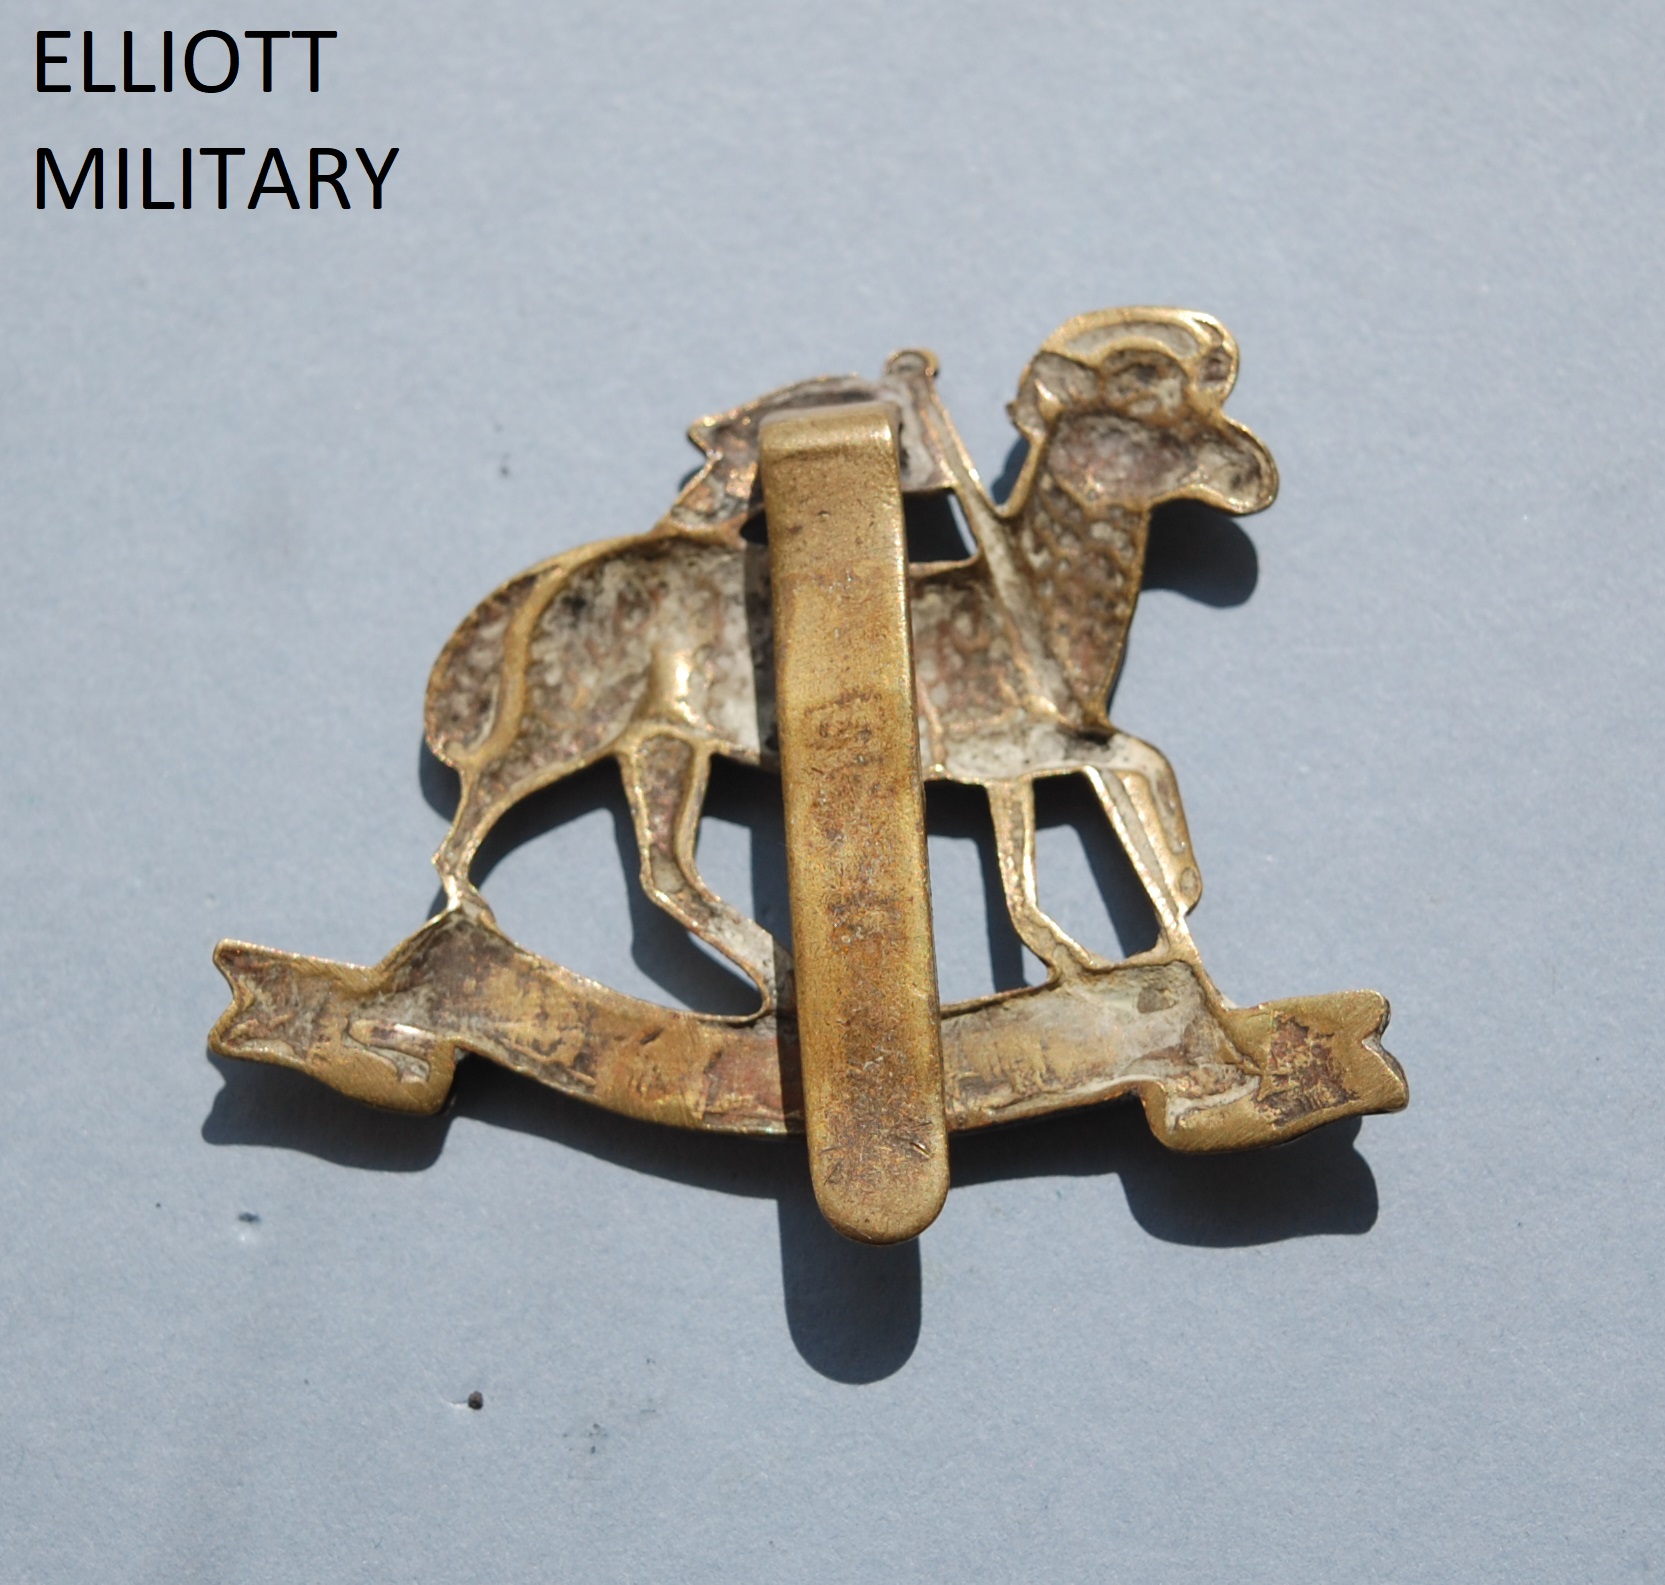 Queens Regiment Cap Badge - Elliott Military